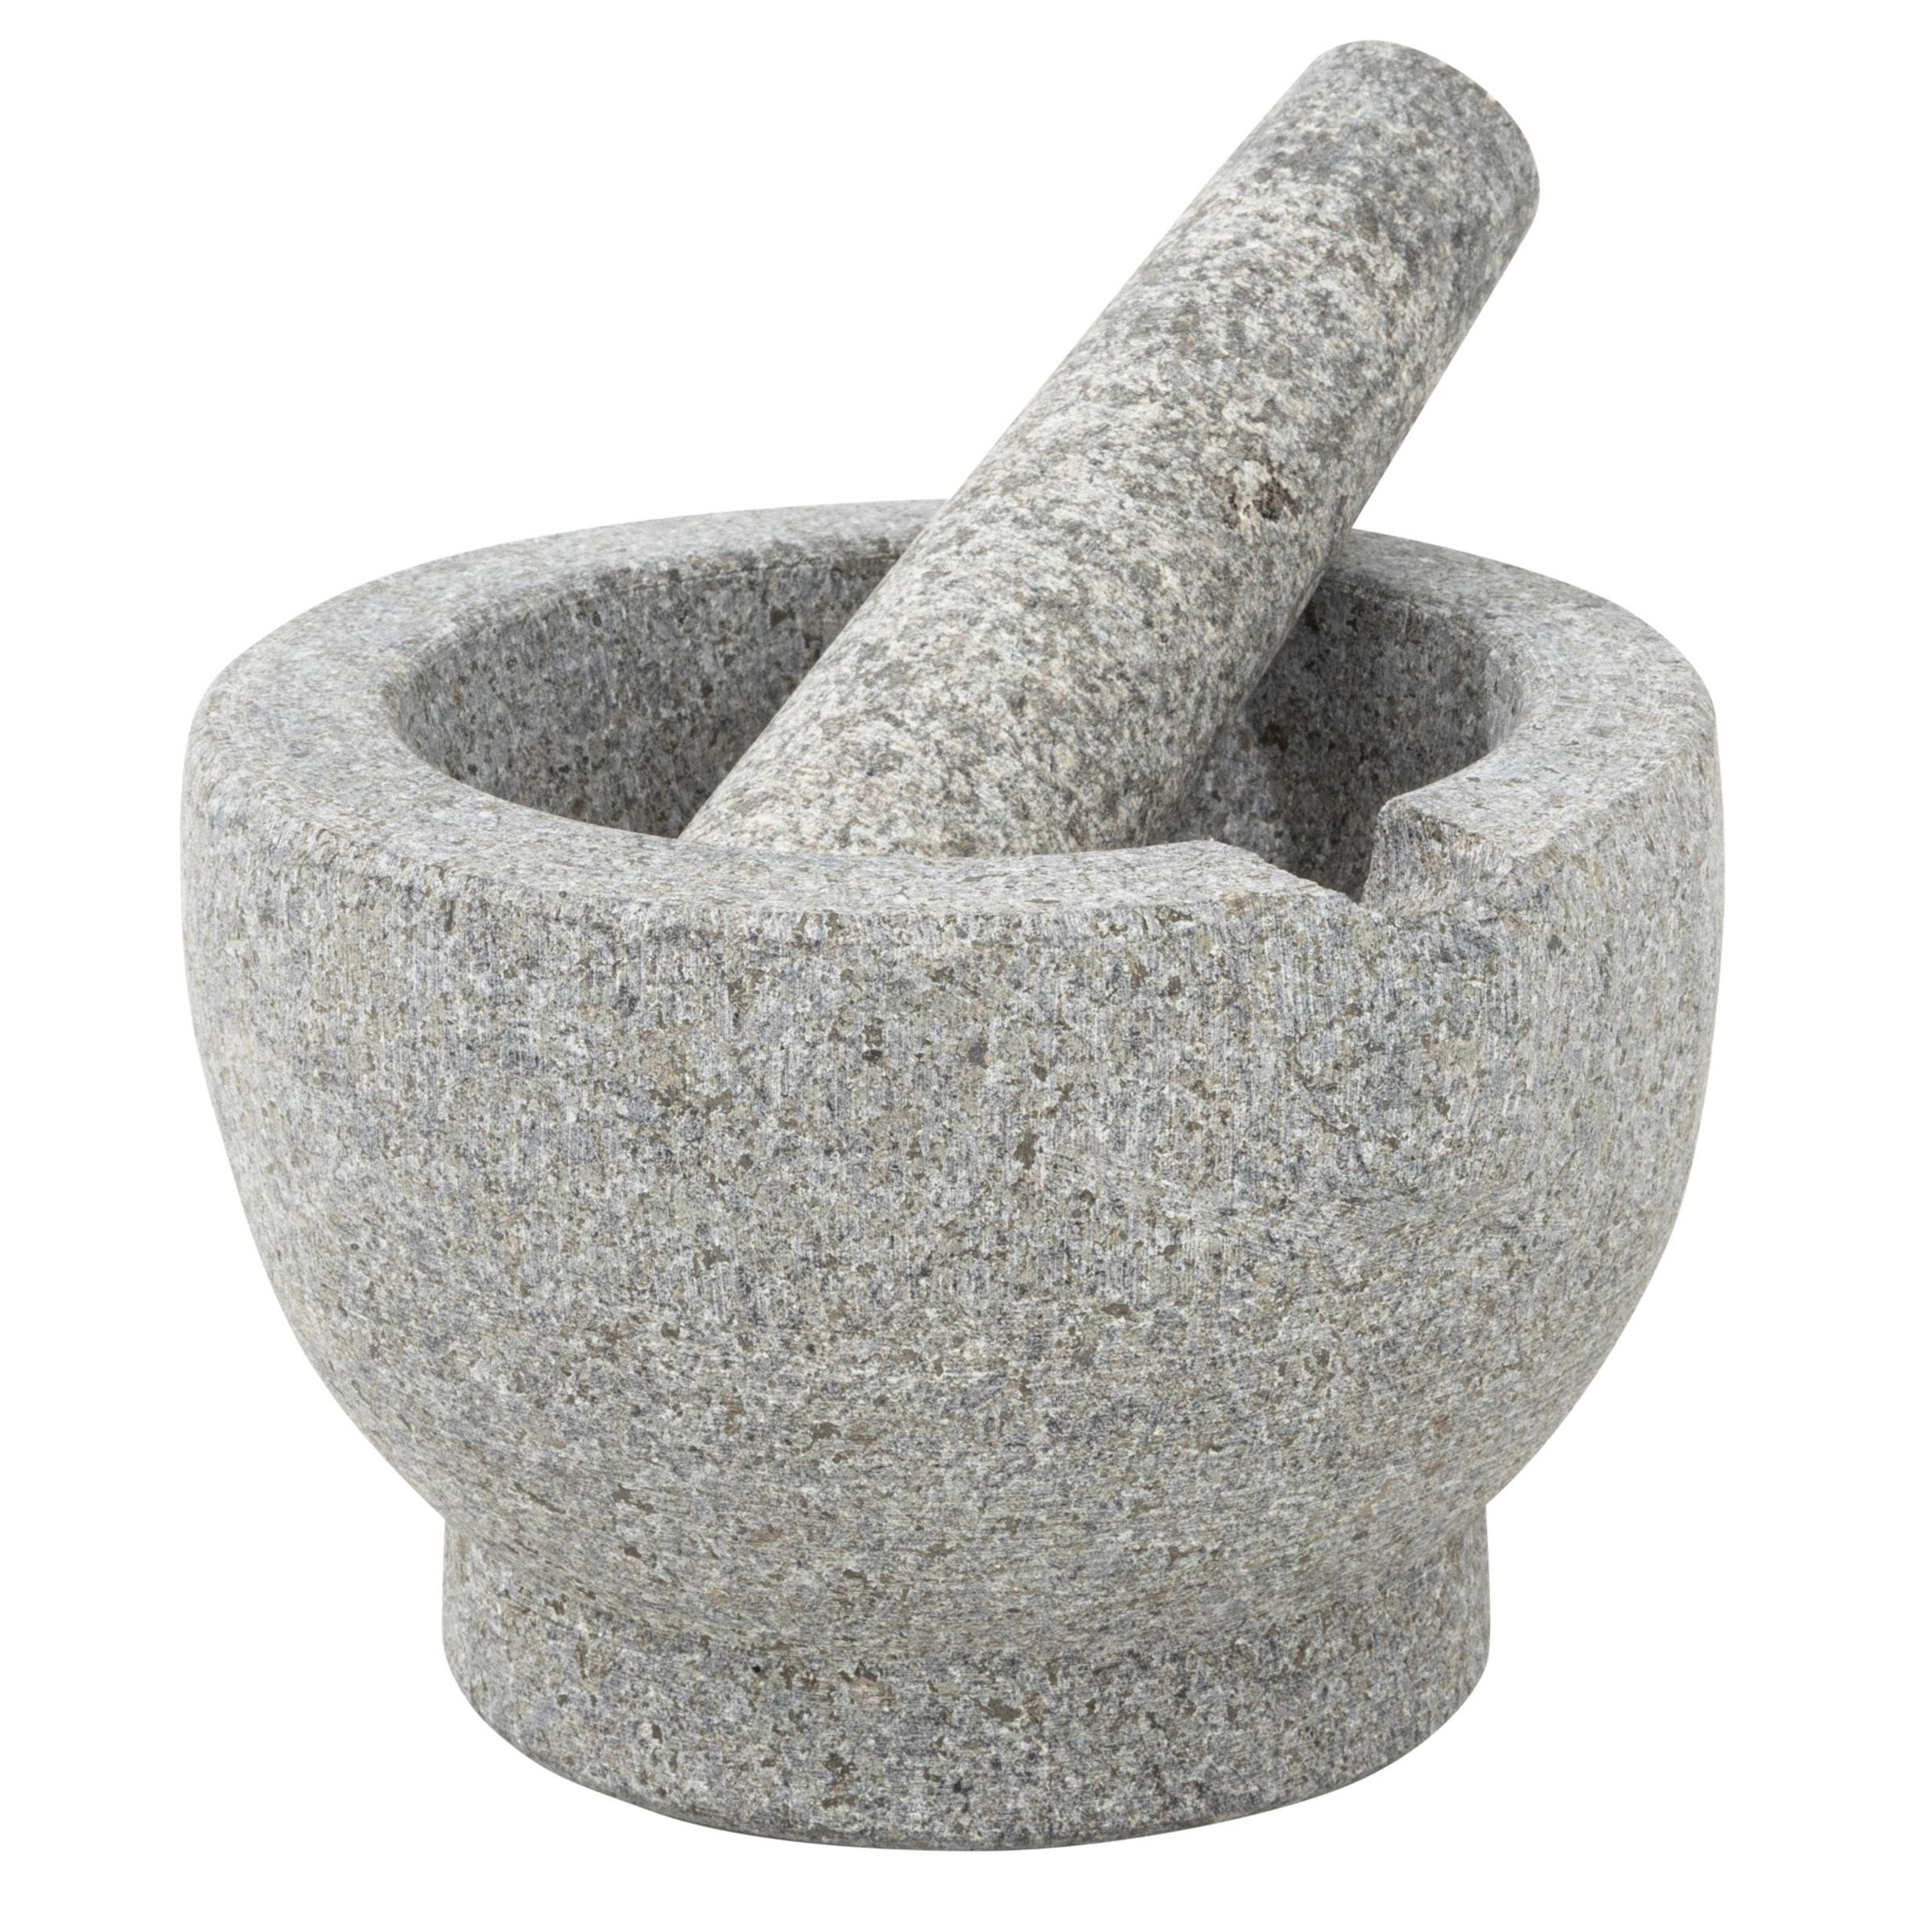 Mörser Stößel Mühle Zerkleinerer Granit mit Gravidus Reibe aus Gewürz Mörser